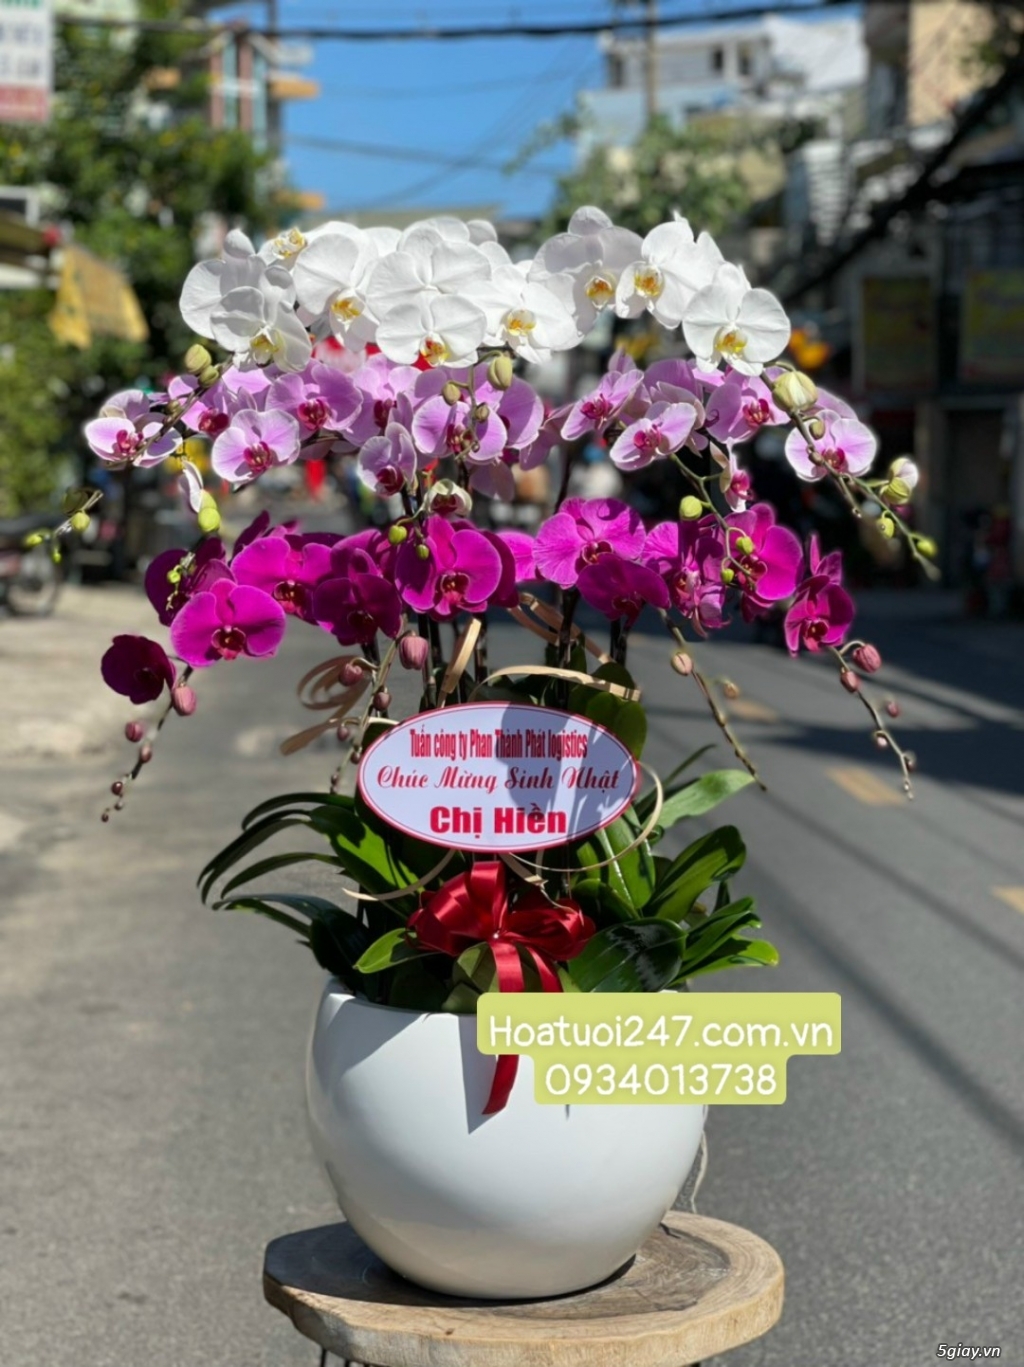 Shop hoa tươi Lan Hồ Điệp 247 tại Tân An Long An - 12